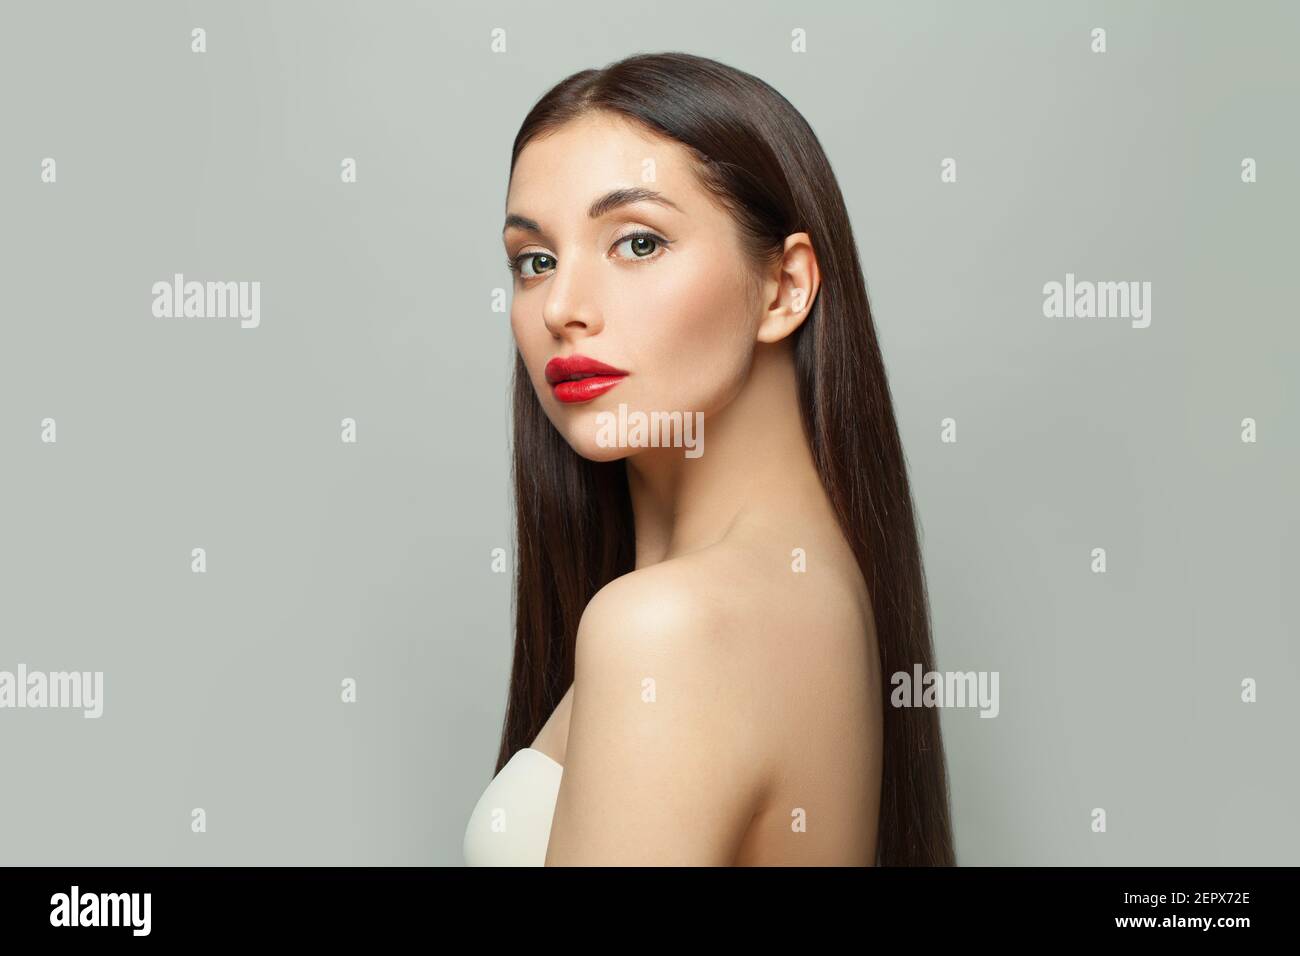 Bella moda modello donna brunette con pelle chiara e lunga capelli lisci sani su sfondo bianco Foto Stock